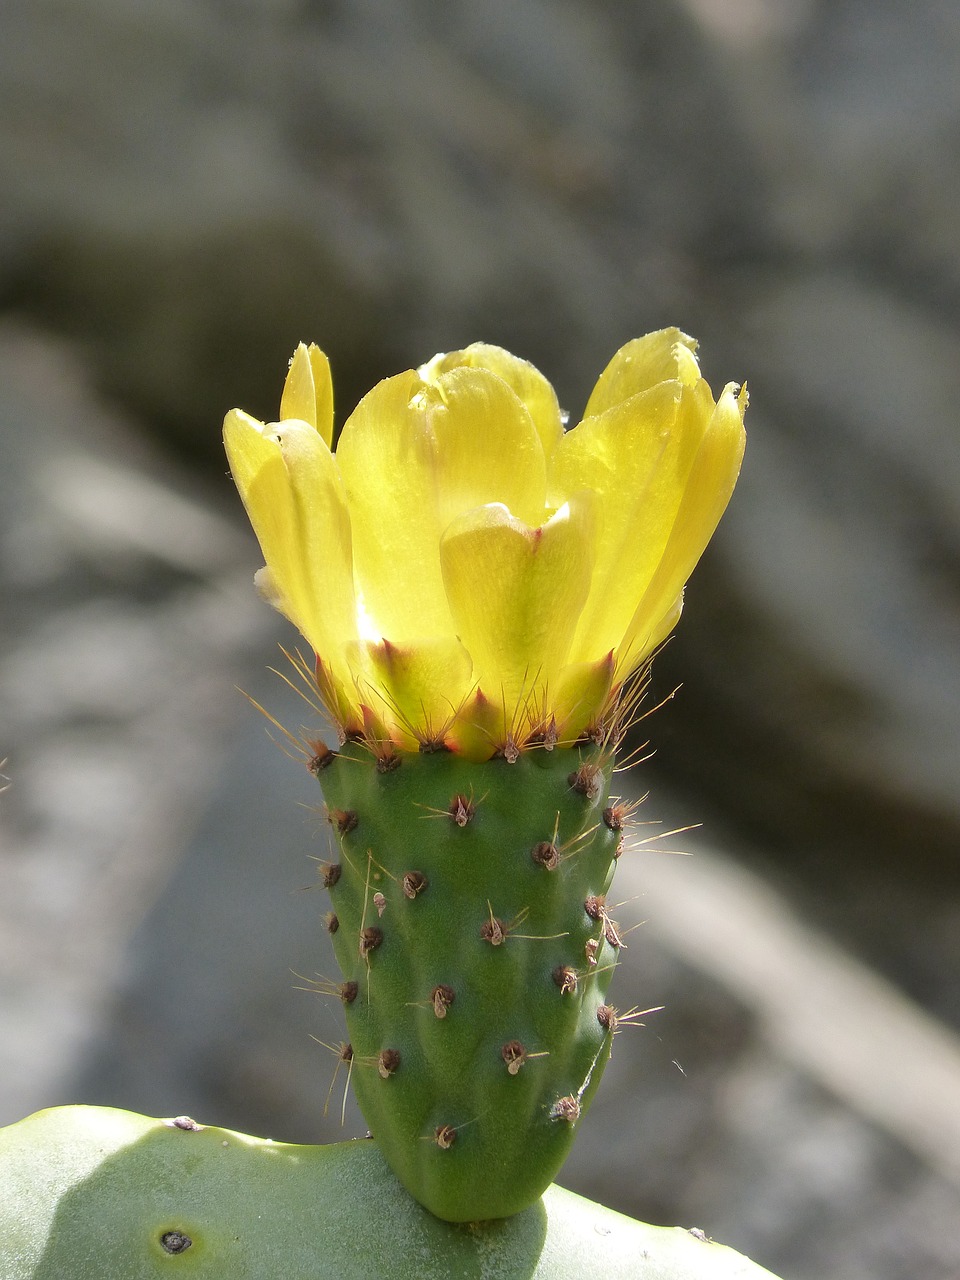 cactus  flor de nopal  prickly pear cactus free photo